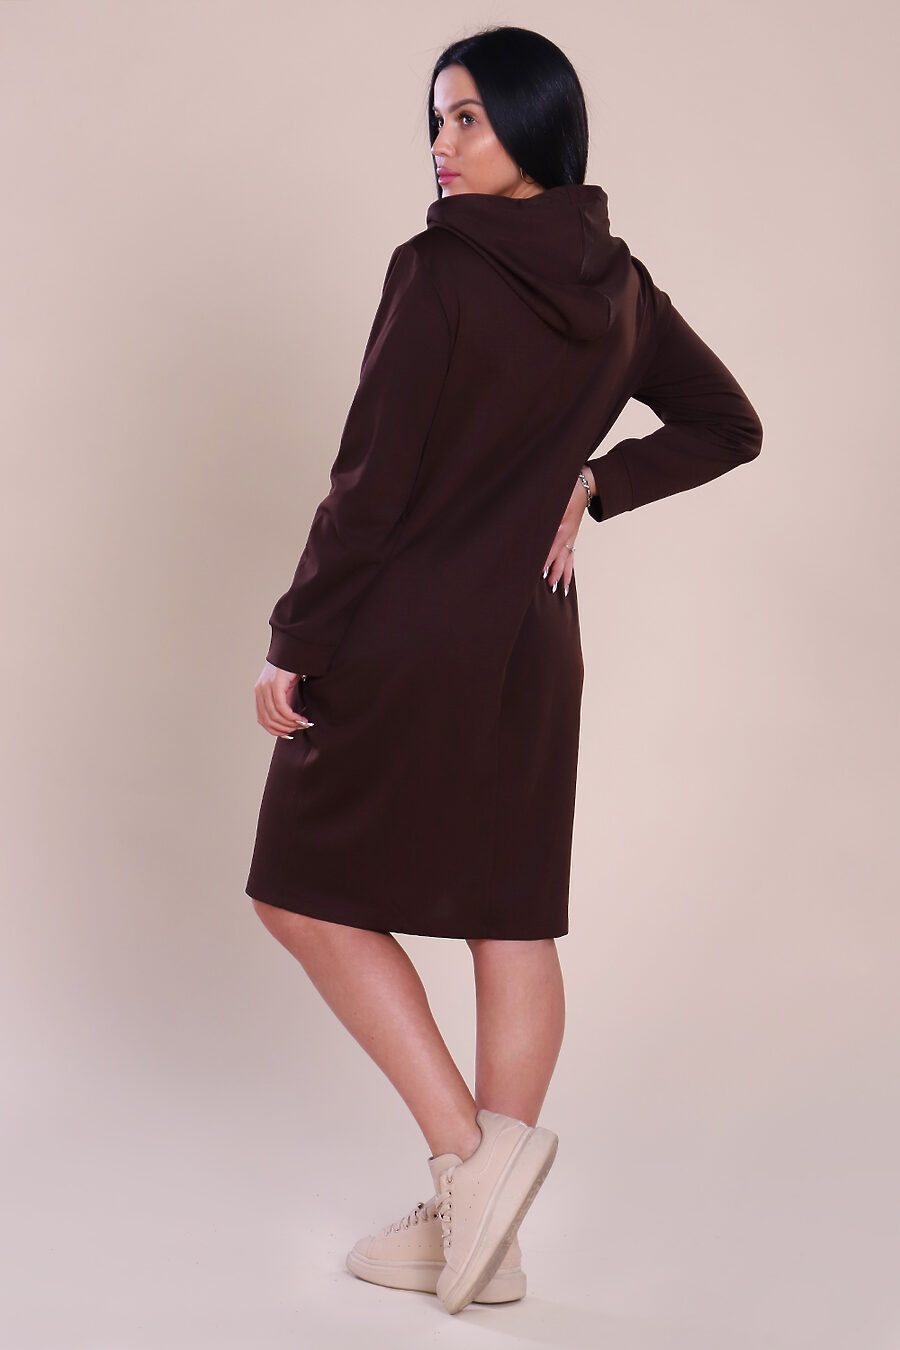 Платье для женщин НАТАЛИ 741219 купить оптом от производителя. Совместная покупка женской одежды в OptMoyo